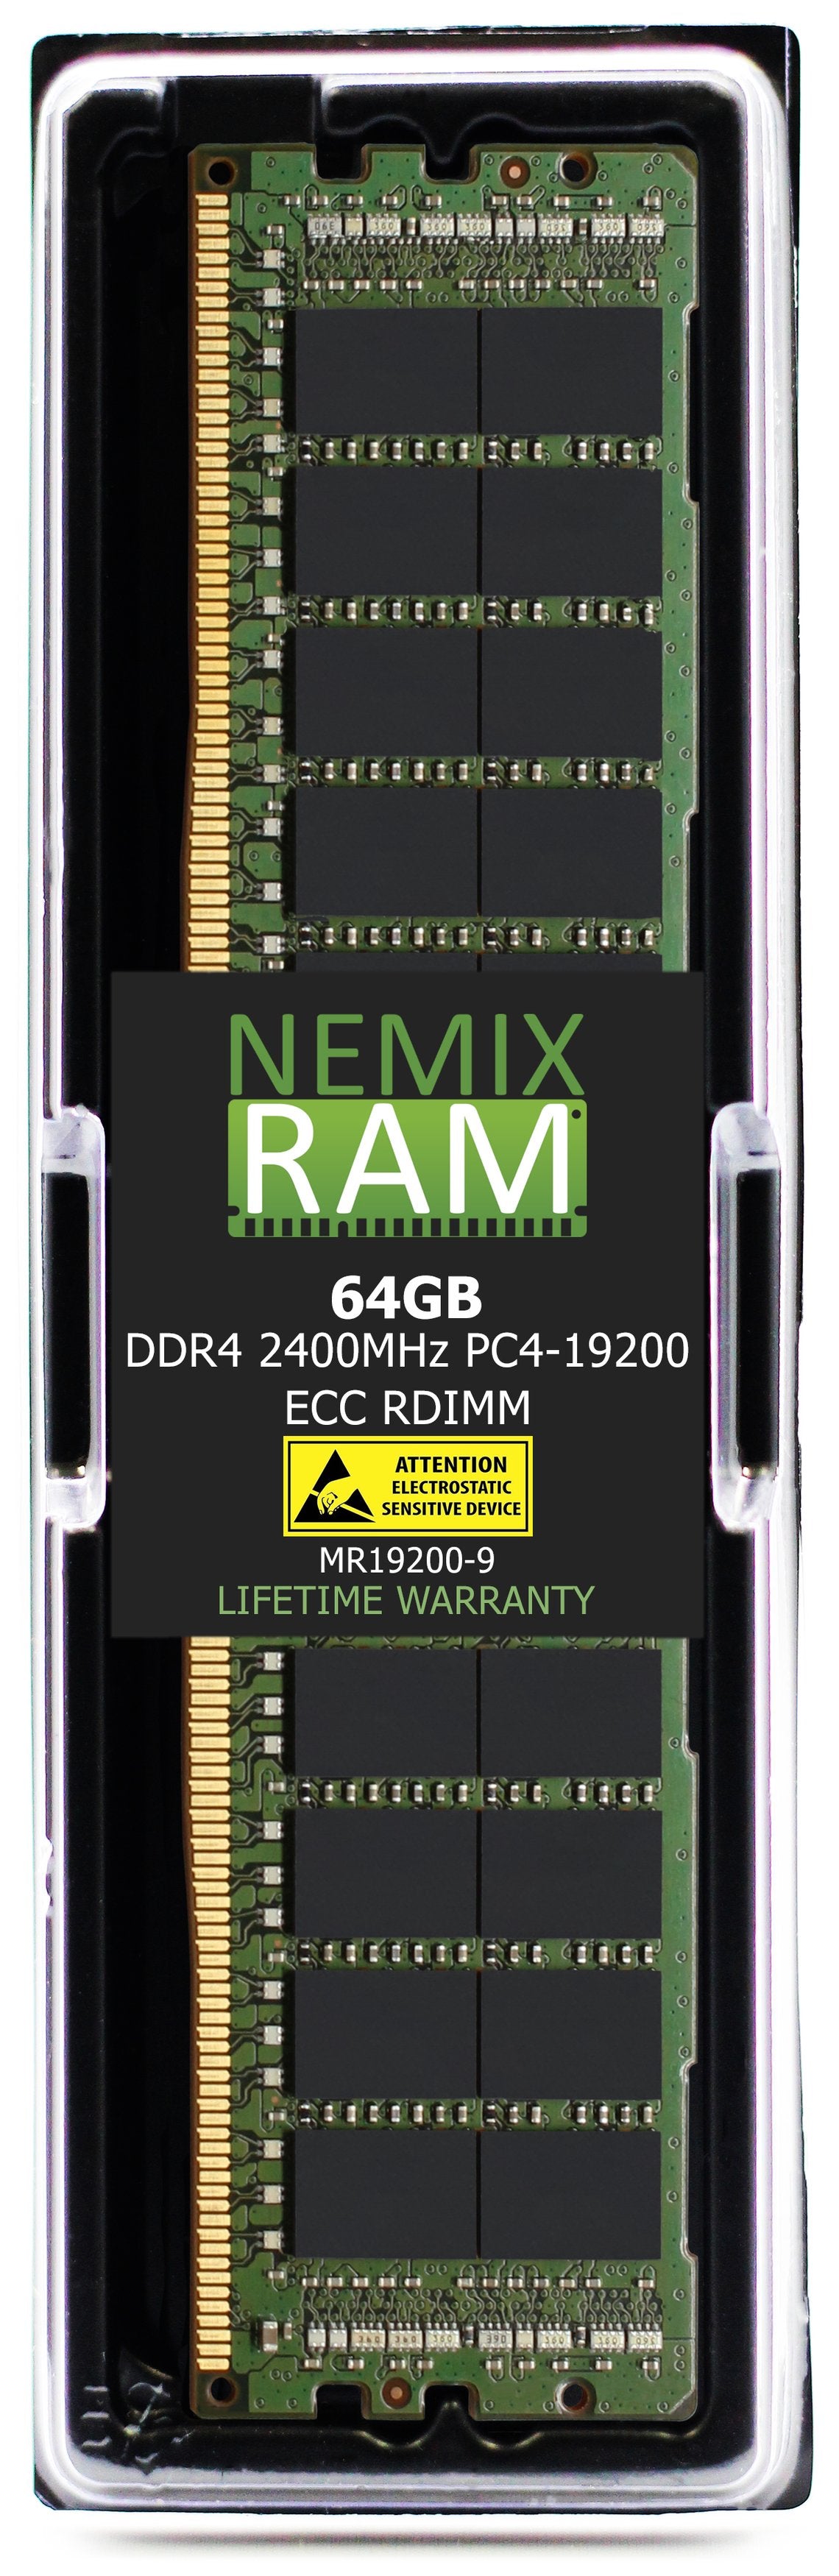 Hynix HMAA8GR7A2R4N-UL 64GB DDR4 2400MHZ PC4-19200 RDIMM Compatible Memory Module